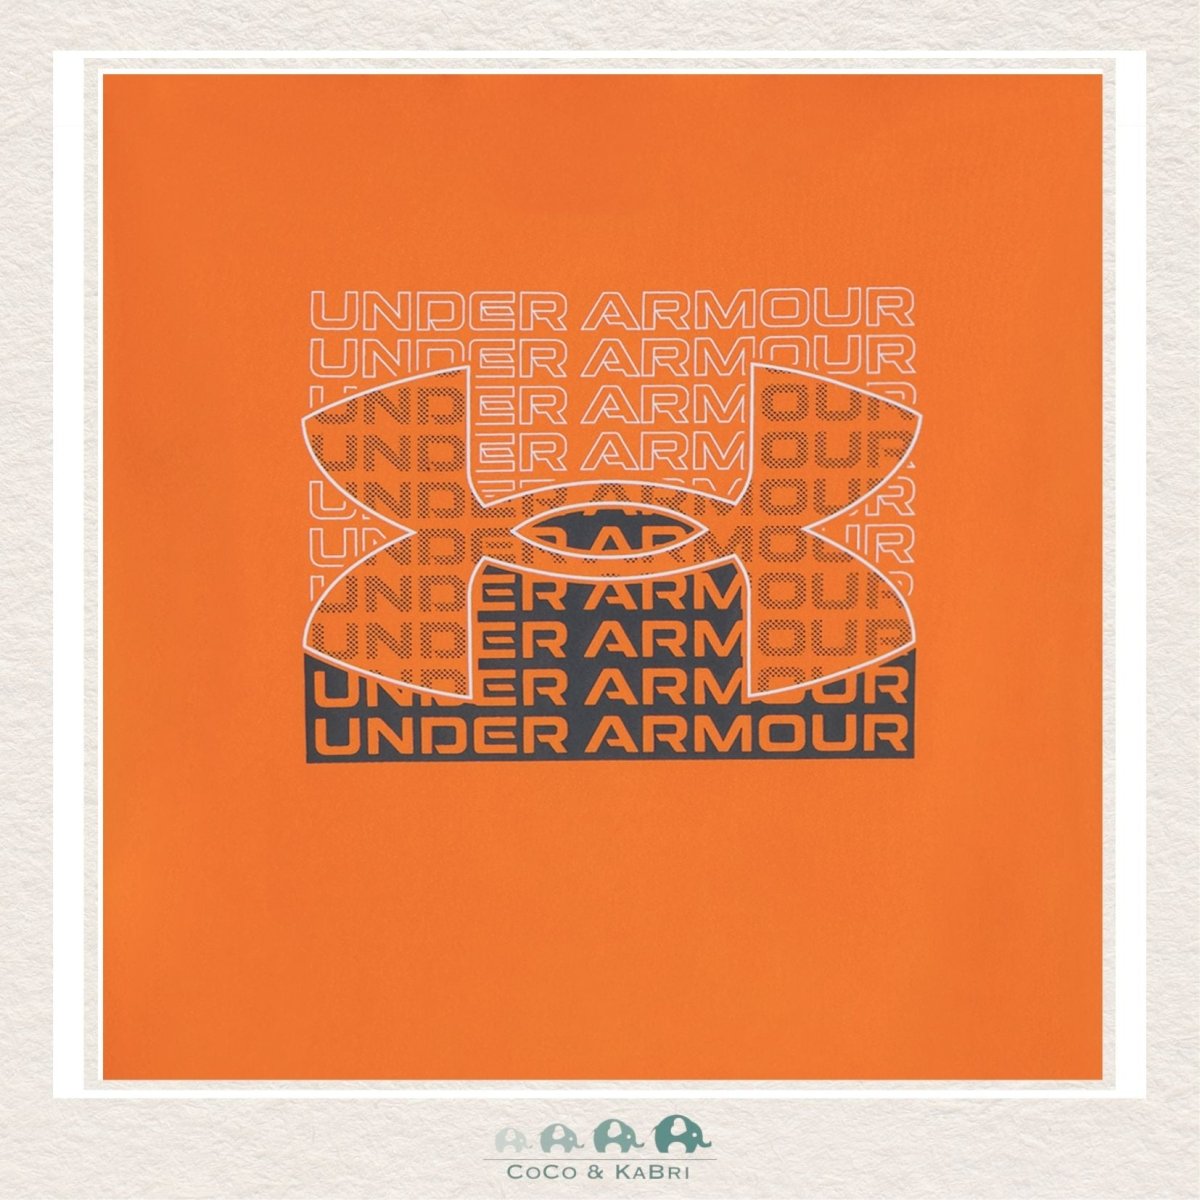 Under Armour Little Boys Orange Tshirt & Grey Shorts, CoCo & KaBri Children's Boutique